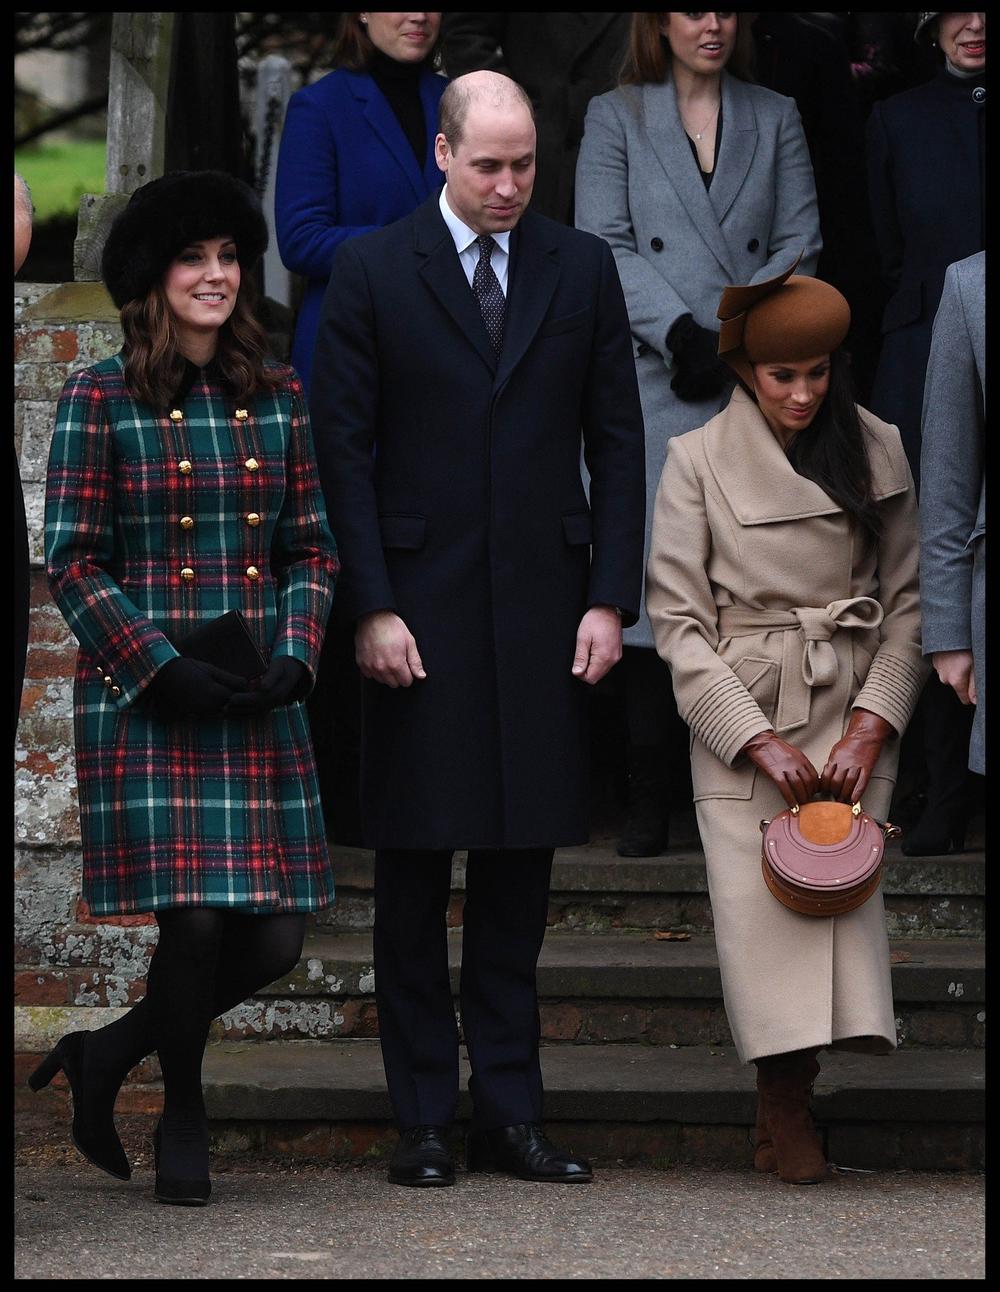 <p>Buduća supruga princa Harija i buduća vojvotkinja od Saseksa danas je trebalo da se pokloni kraljici Elizabeti II na božićnoj misi, a kamere su zabeležile kako lepa Megan paniči zbog toga.</p>